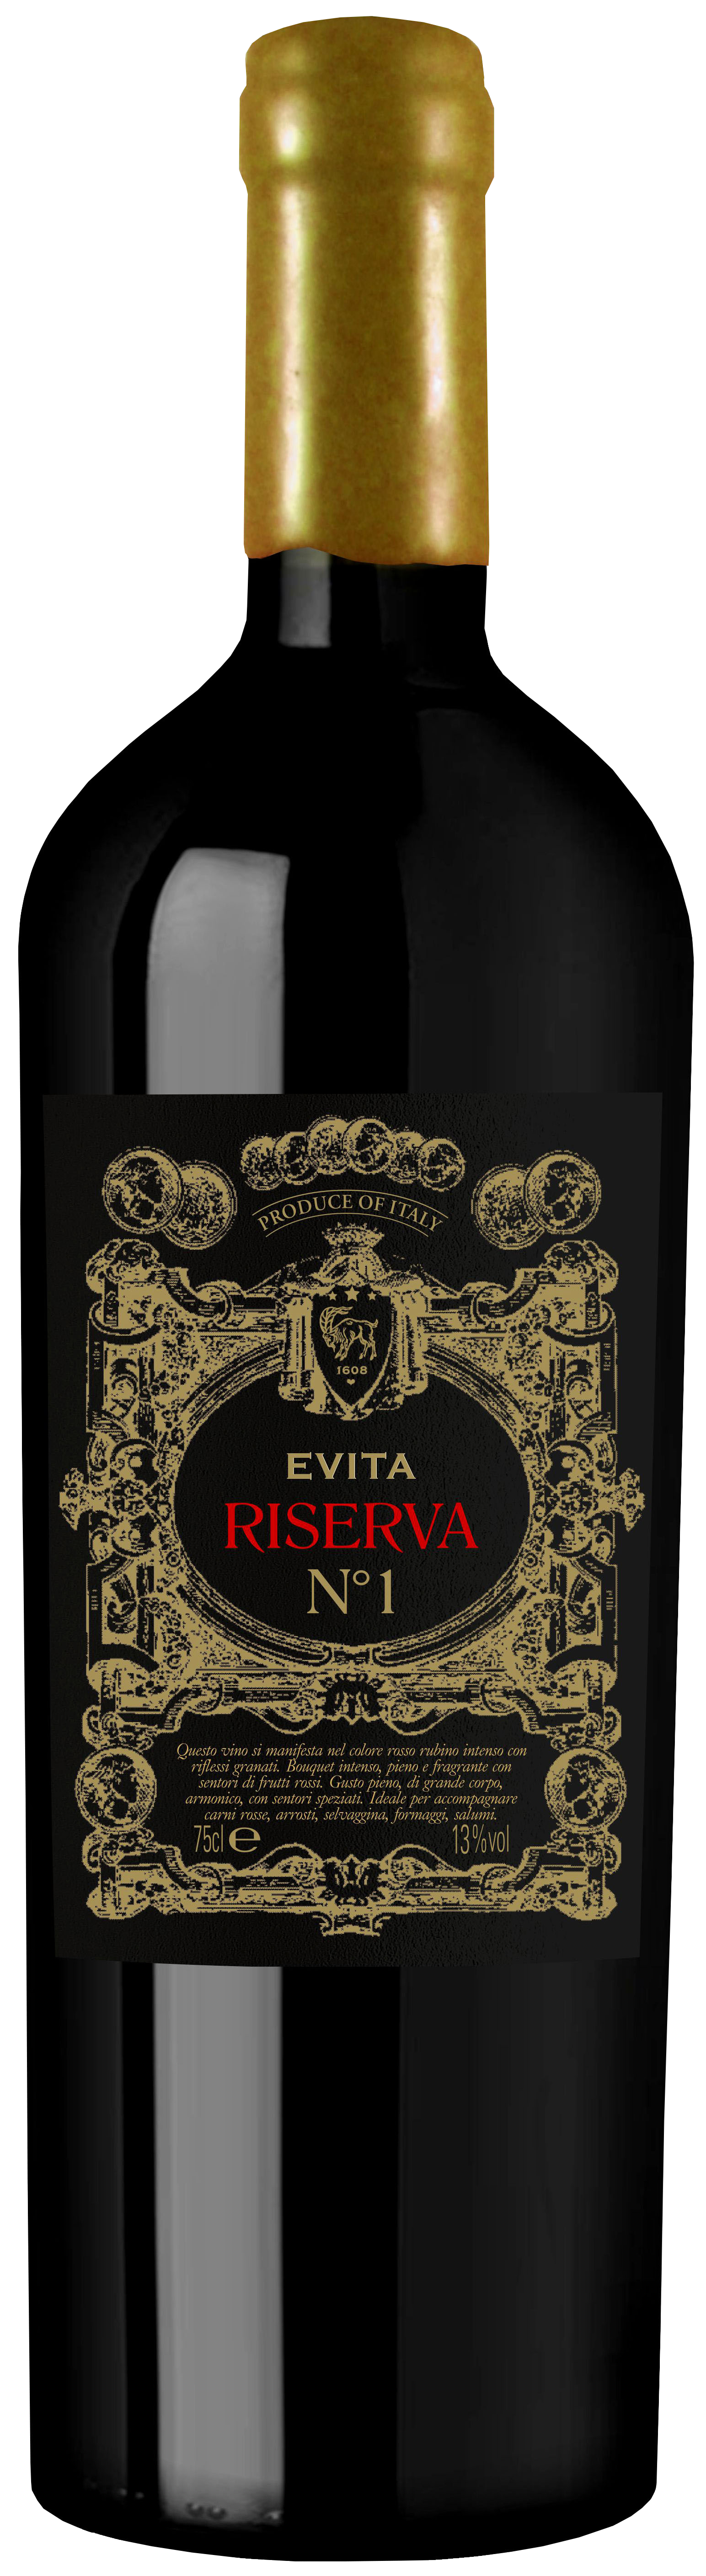 EVITA-Rosso-Riserva